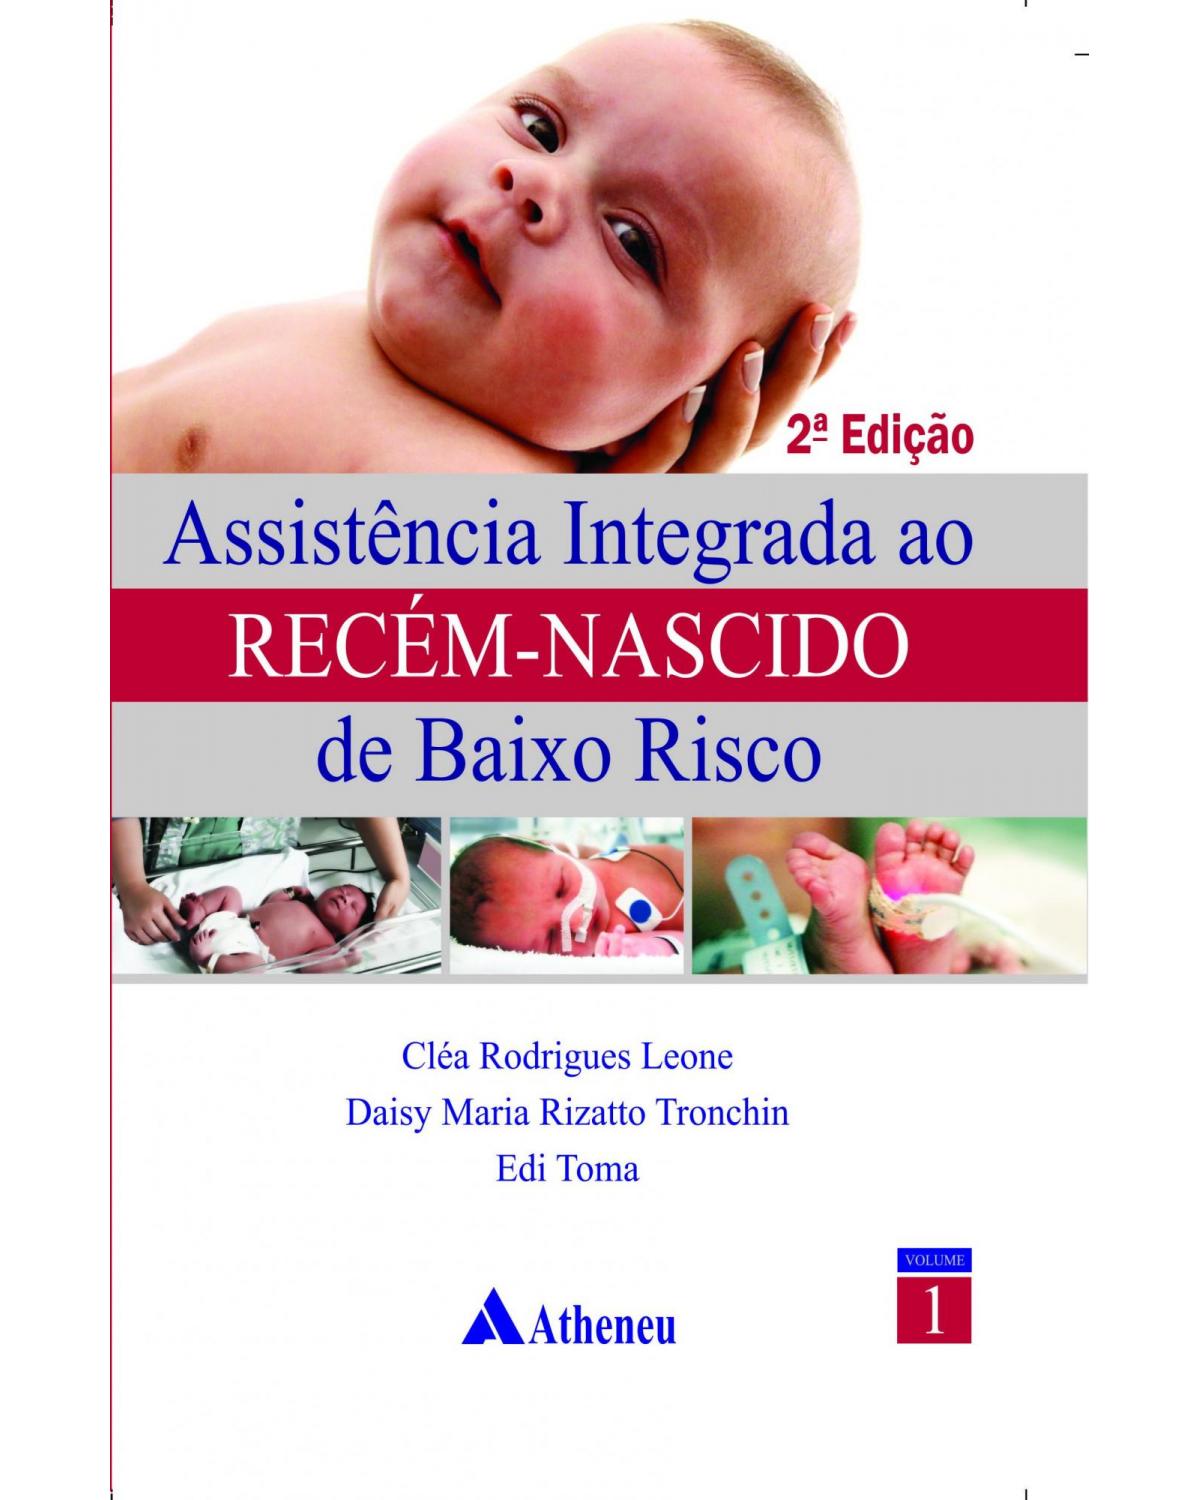 Assistência integrada ao recém-nascido de baixo risco - Volume 1:  - 2ª Edição | 2011